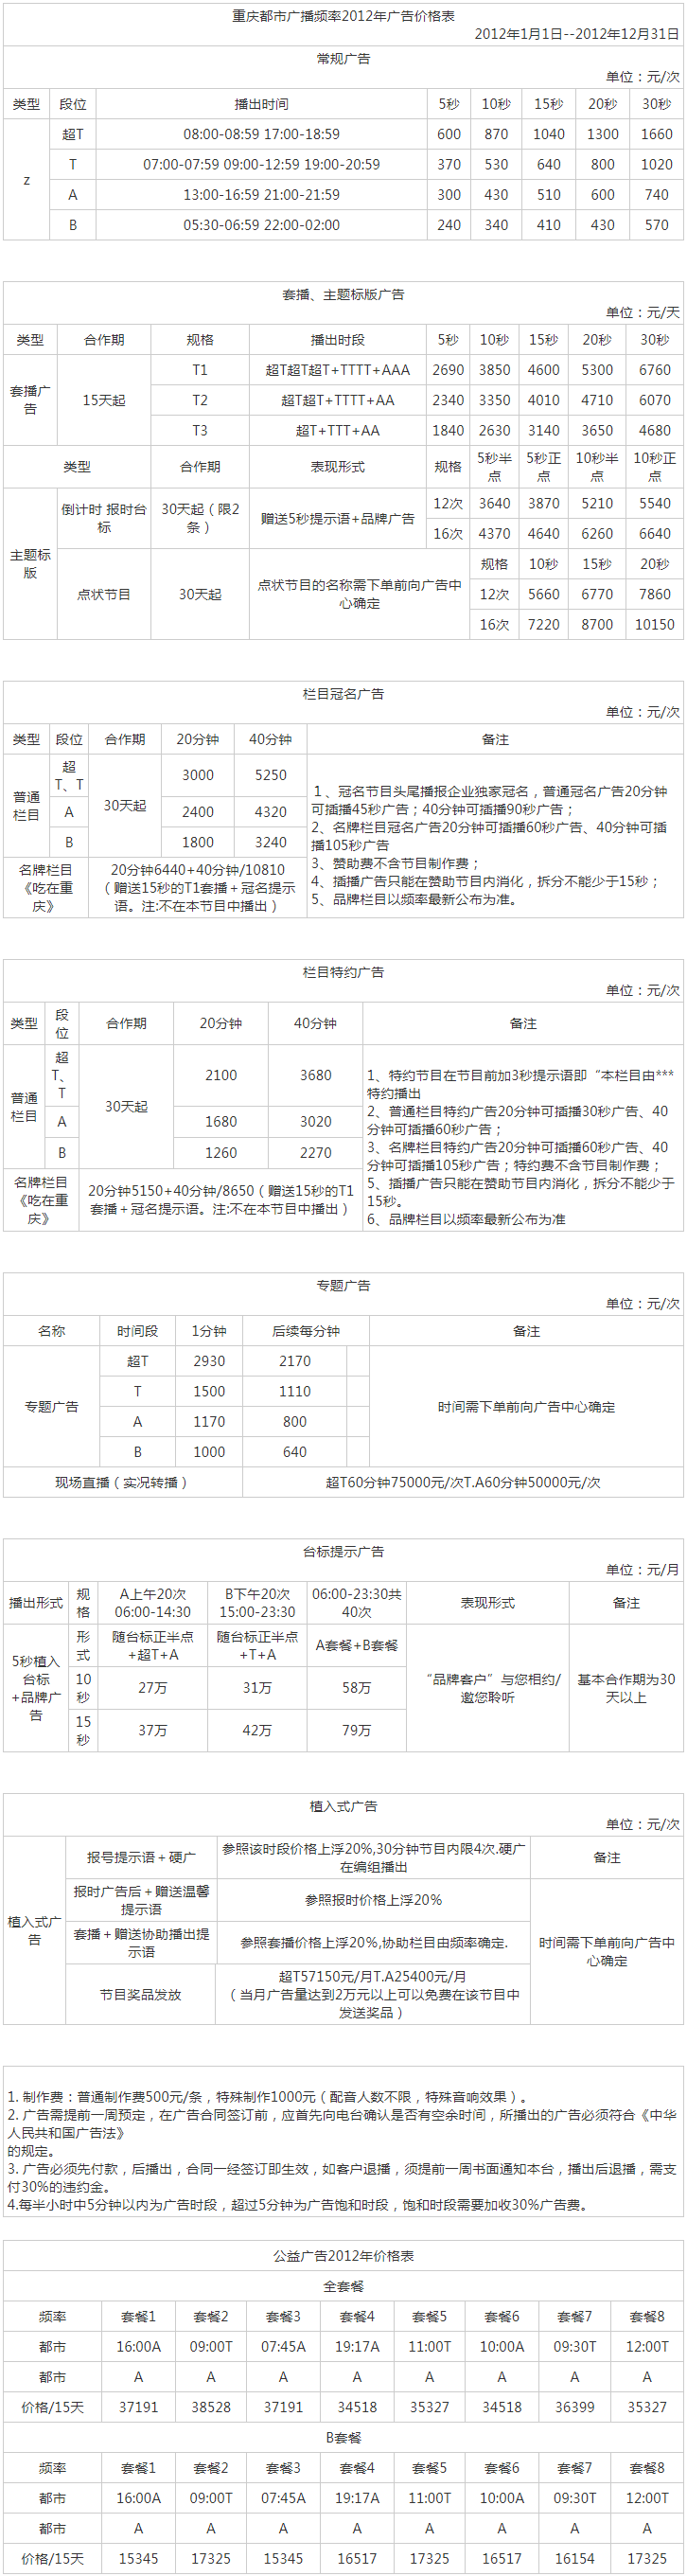 2012重庆人民广播电台都市频率 FM93.8广告报价表.png